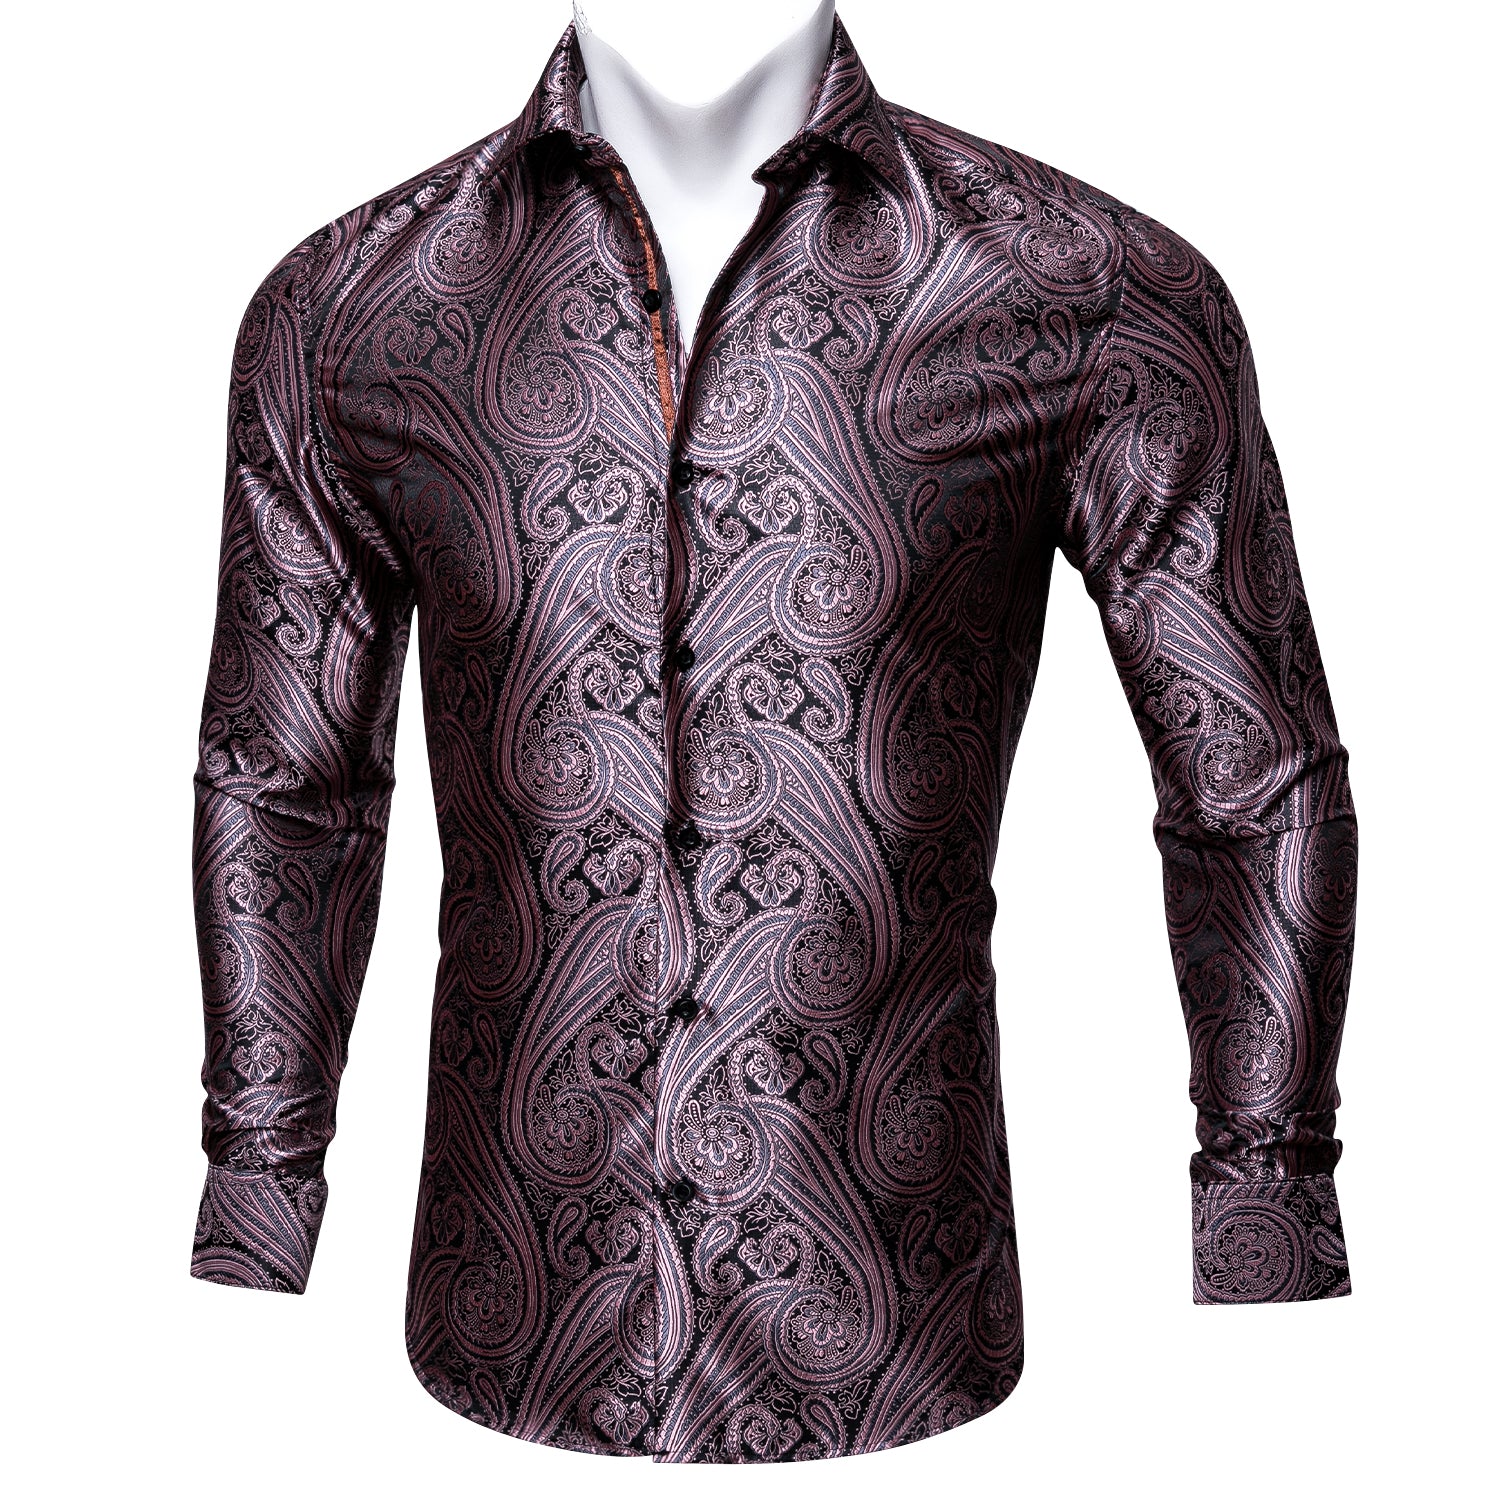 Barry.wang Men's Shirt Black Purple Shining Woven Paisley Silk Shirt